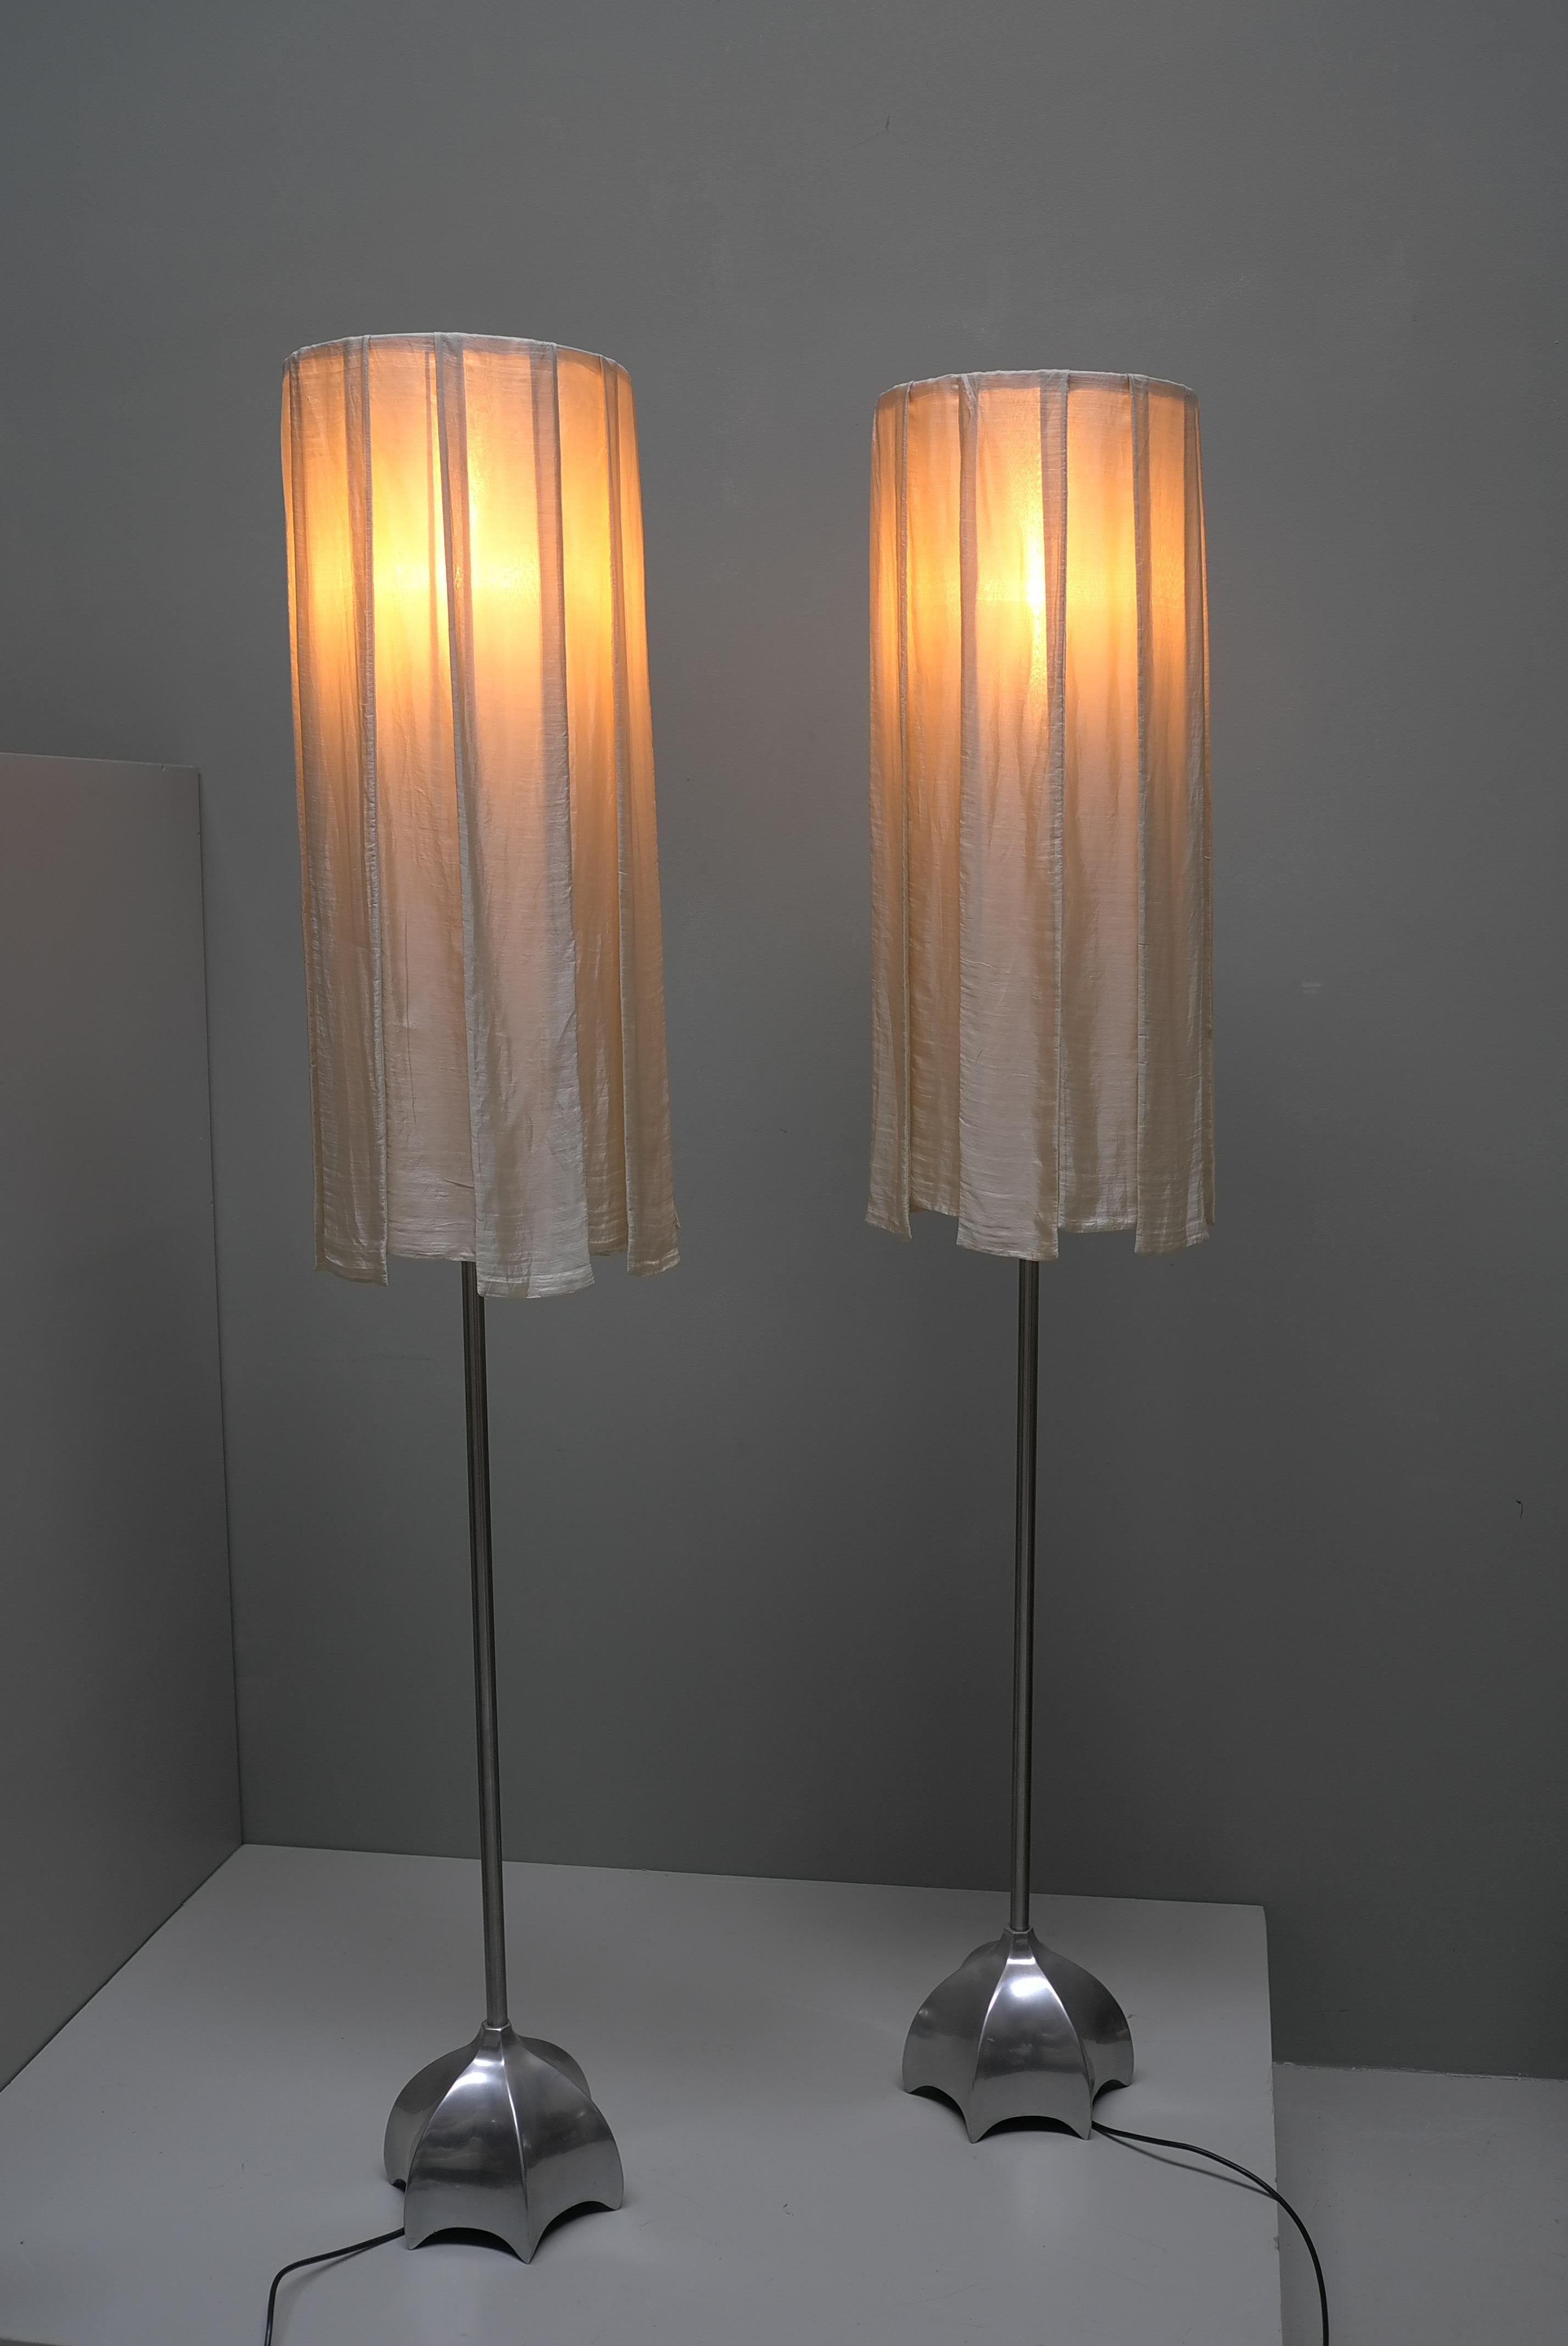 Paire de lampadaires sculpturaux en laiton avec abat-jour en rideau de soie blanc cassé, vers les années 1980. Les lampes sont graduables.

